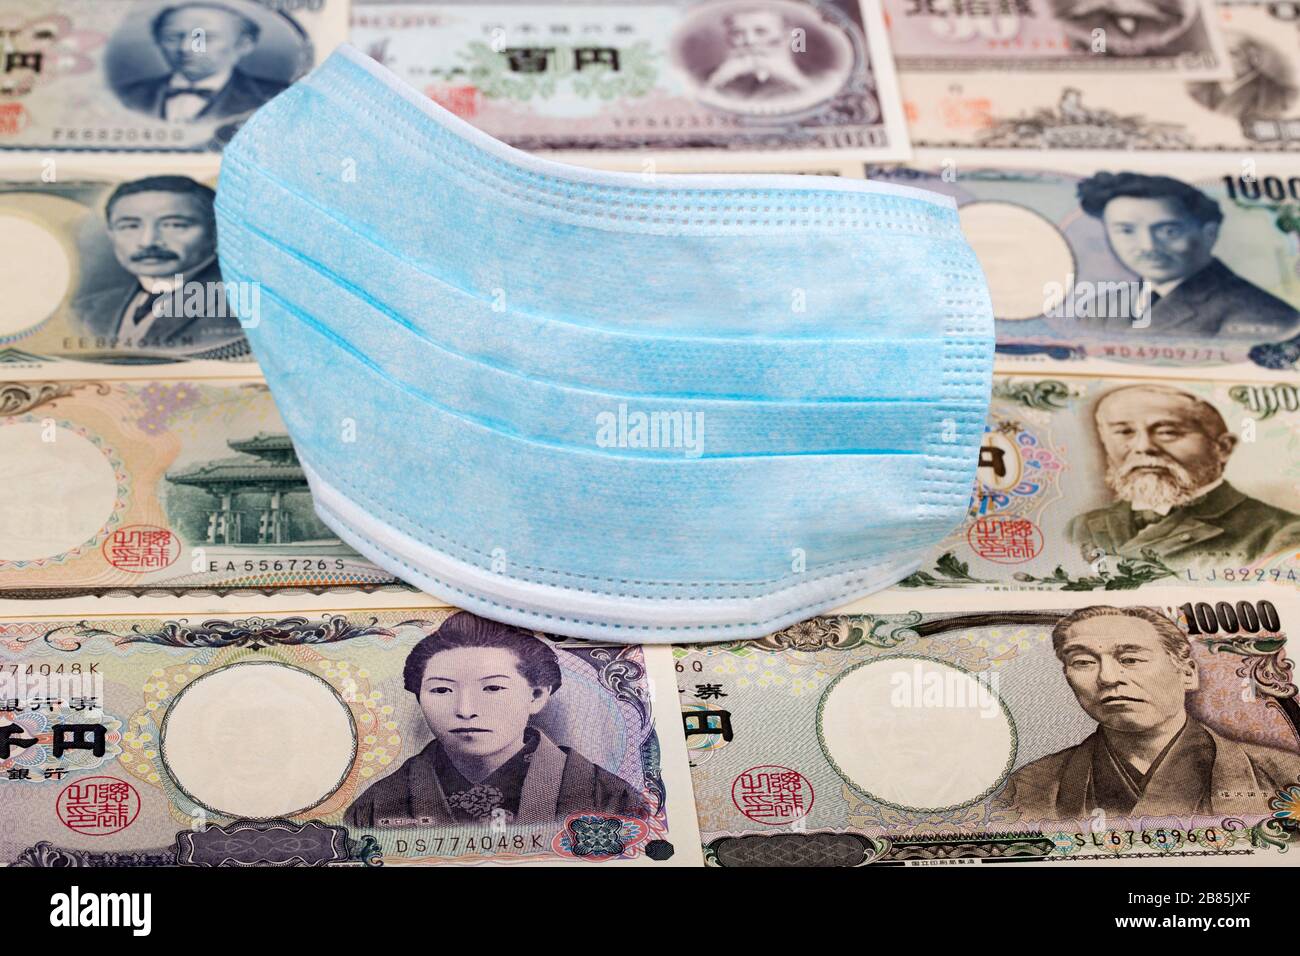 Masque de protection sur un argent japonais - Yen Banque D'Images